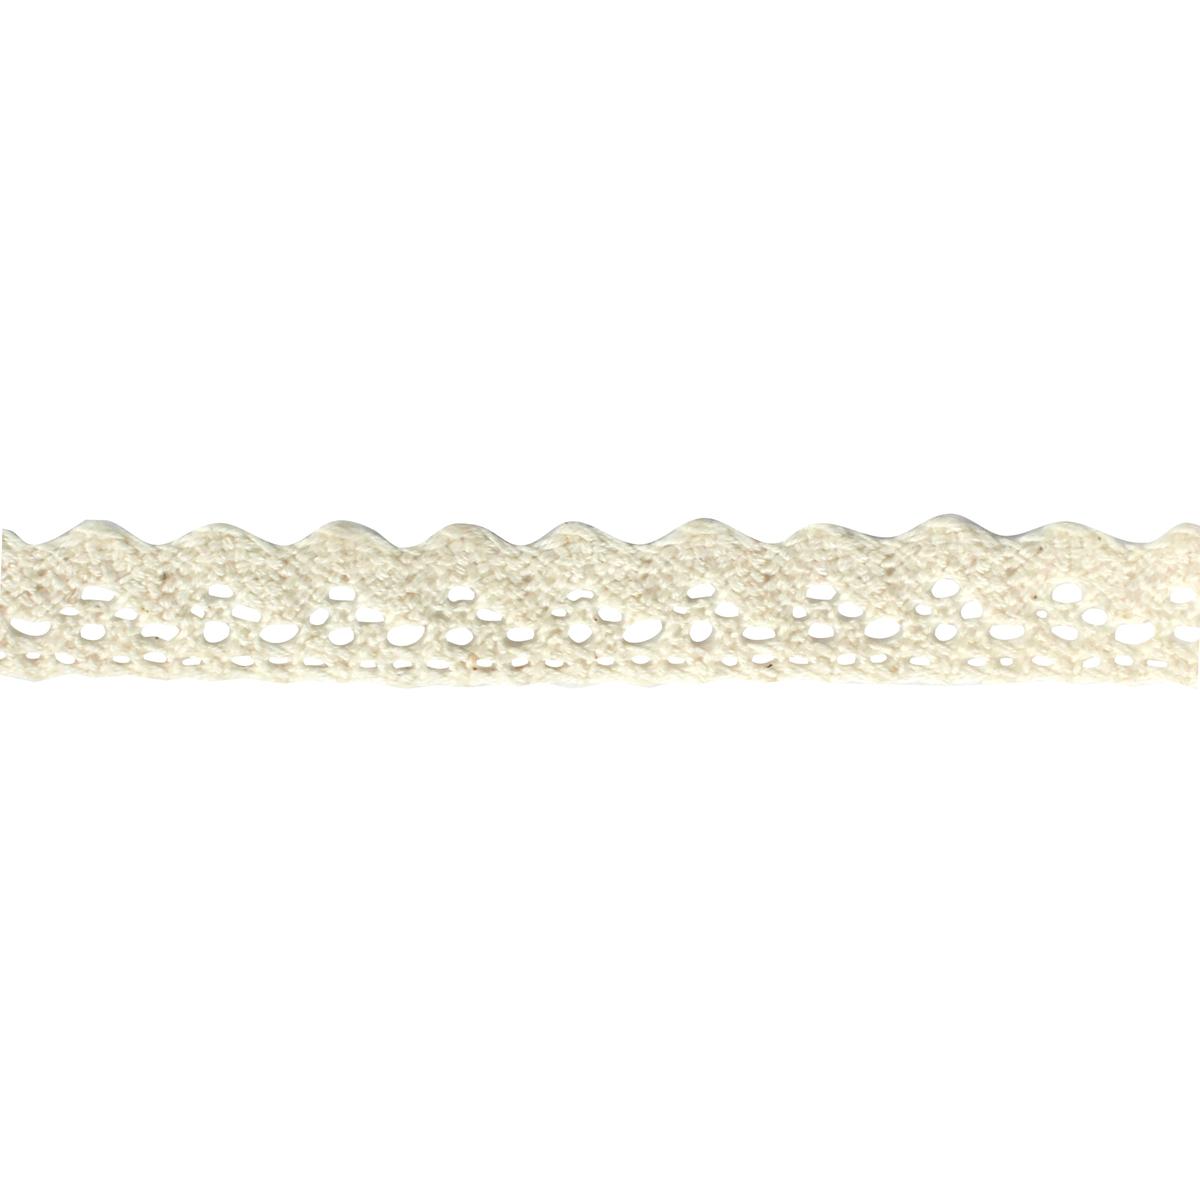 Ruban dentelle coton adhésif beige 1,5 cm x 1 m